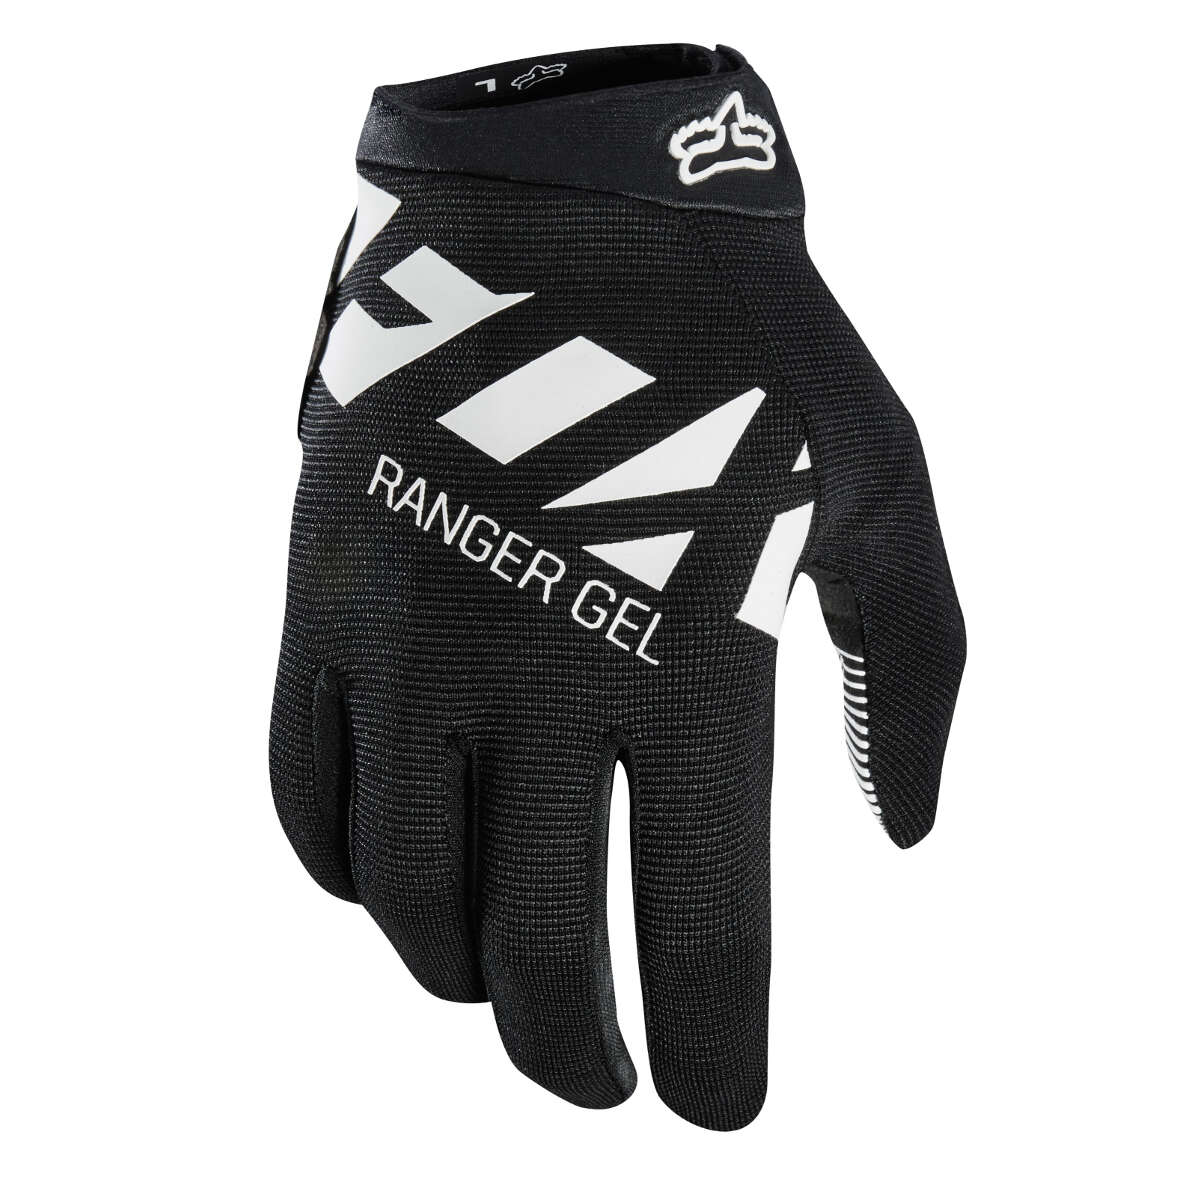 Fox Bike Gloves Ranger Gel Black/White